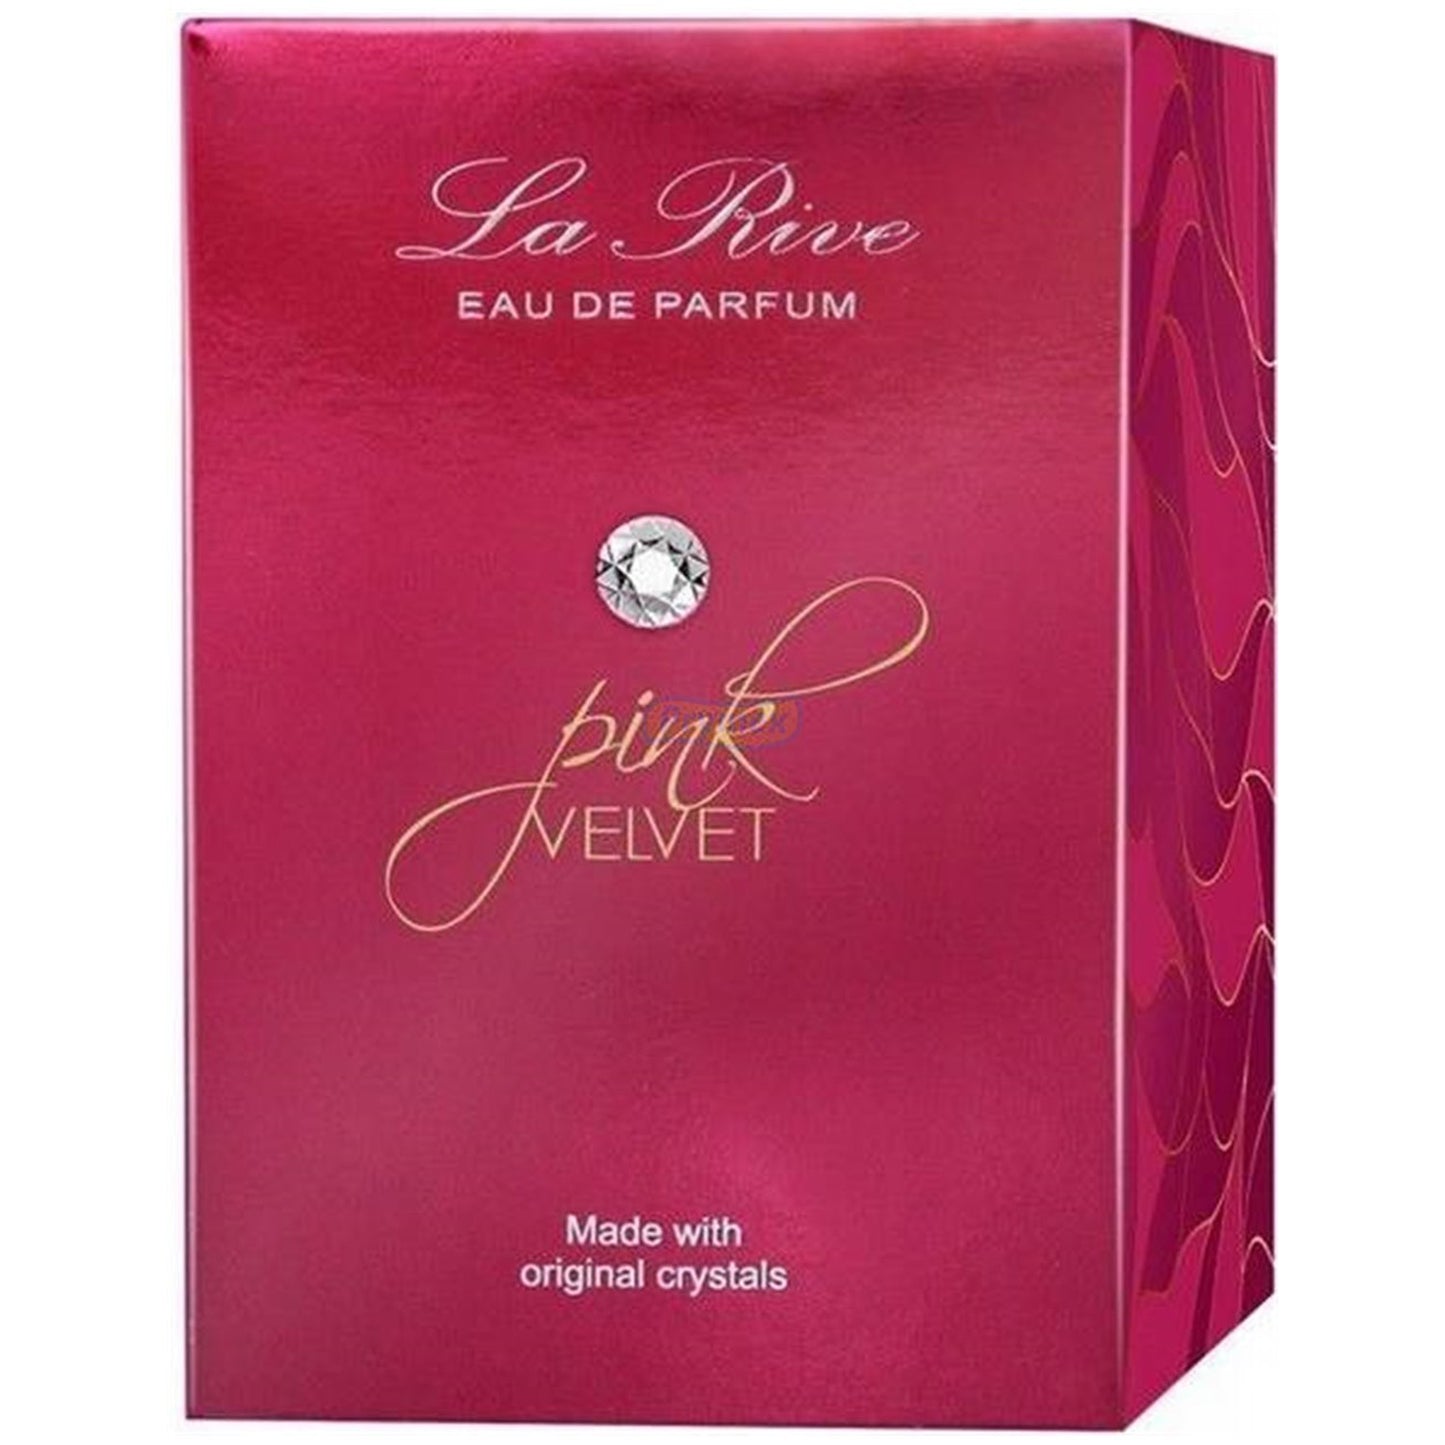 LA RIVE PINK VELVET EAU DE PARFUM 75ML - Citrus Aromatic